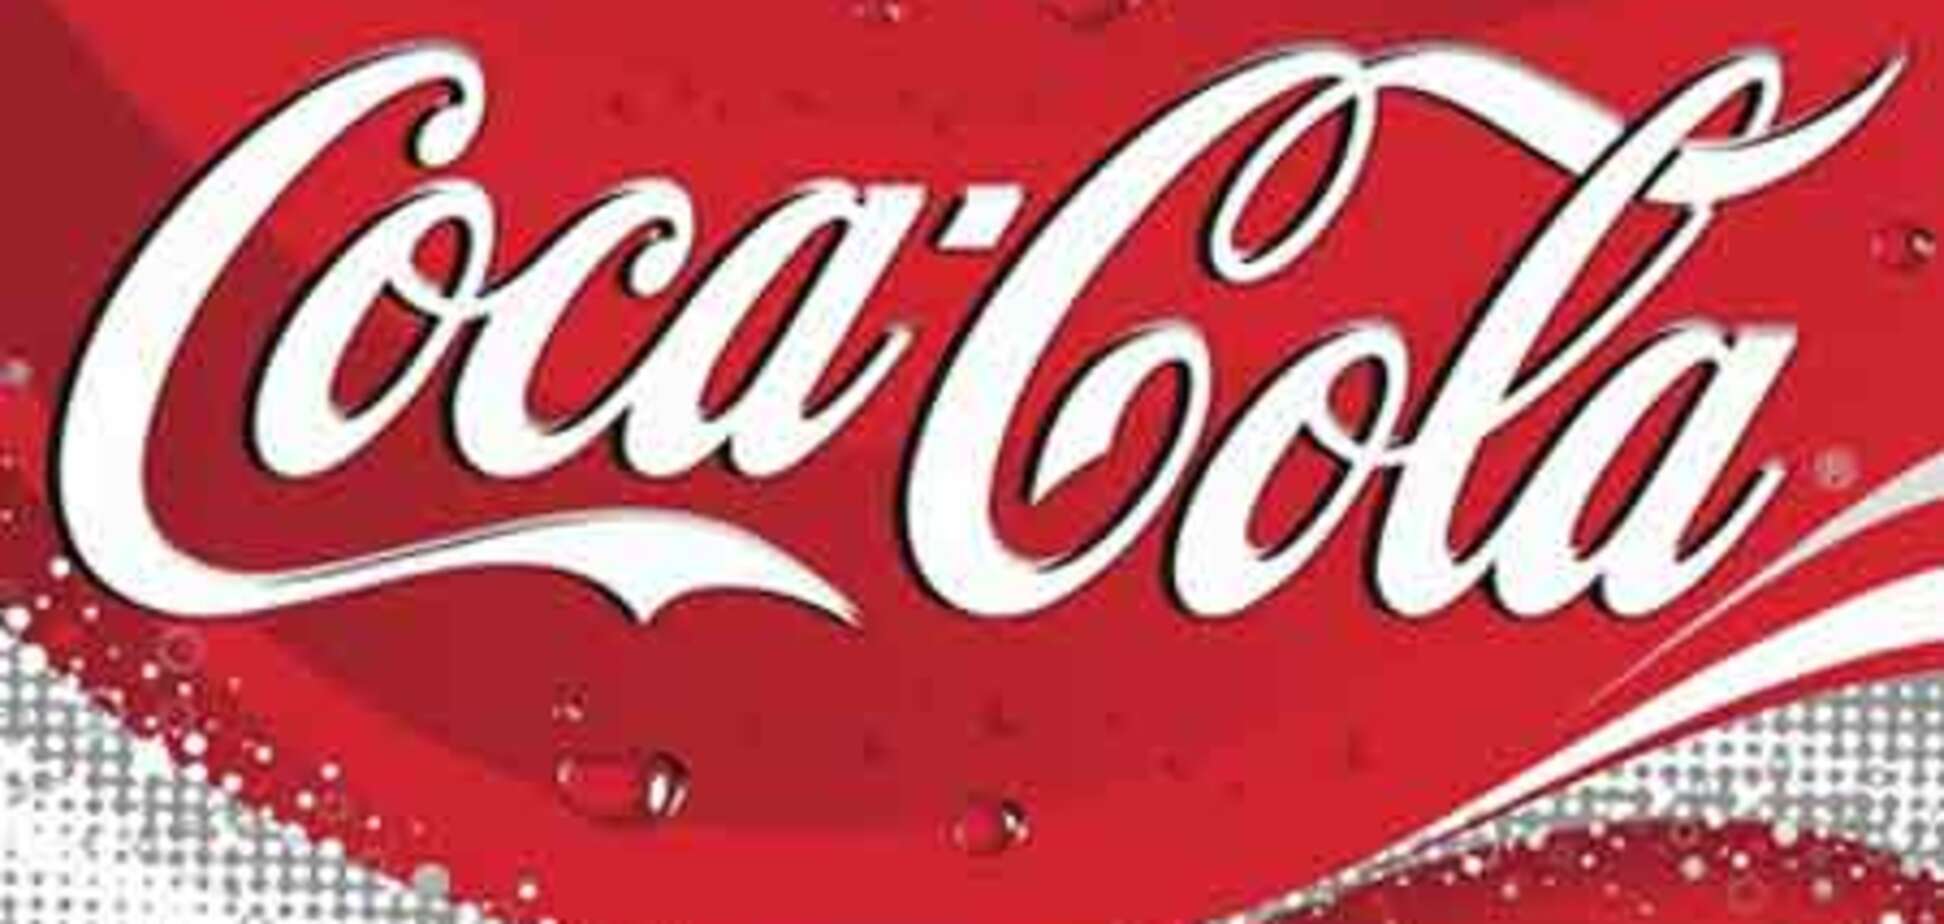 Coca-cola как наркотик и средство от алкоголизма